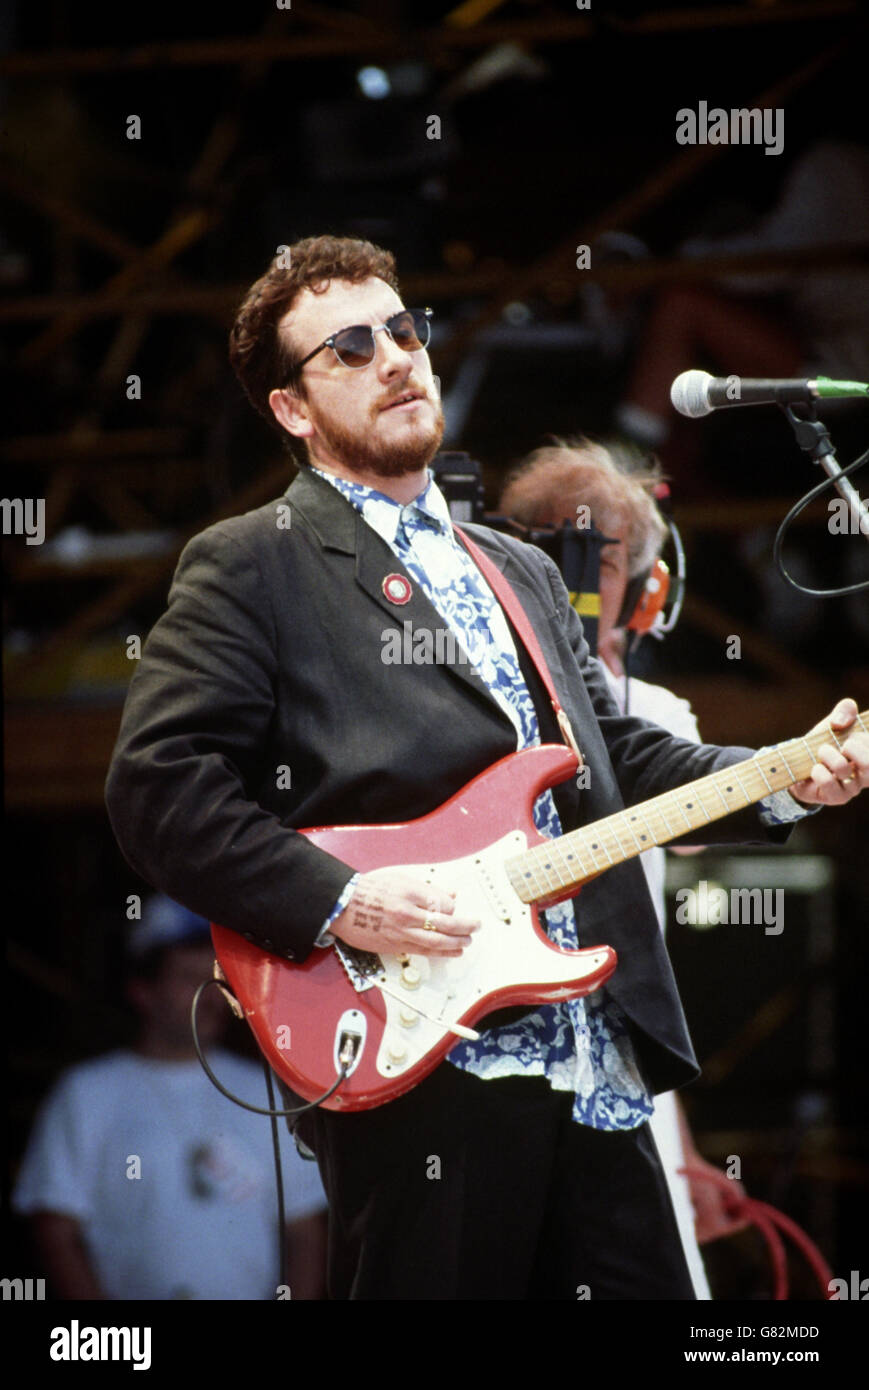 Concerto di aiuti dal vivo - Stadio di Wembley. Elvis Costello si esibisce sul palco. Foto Stock